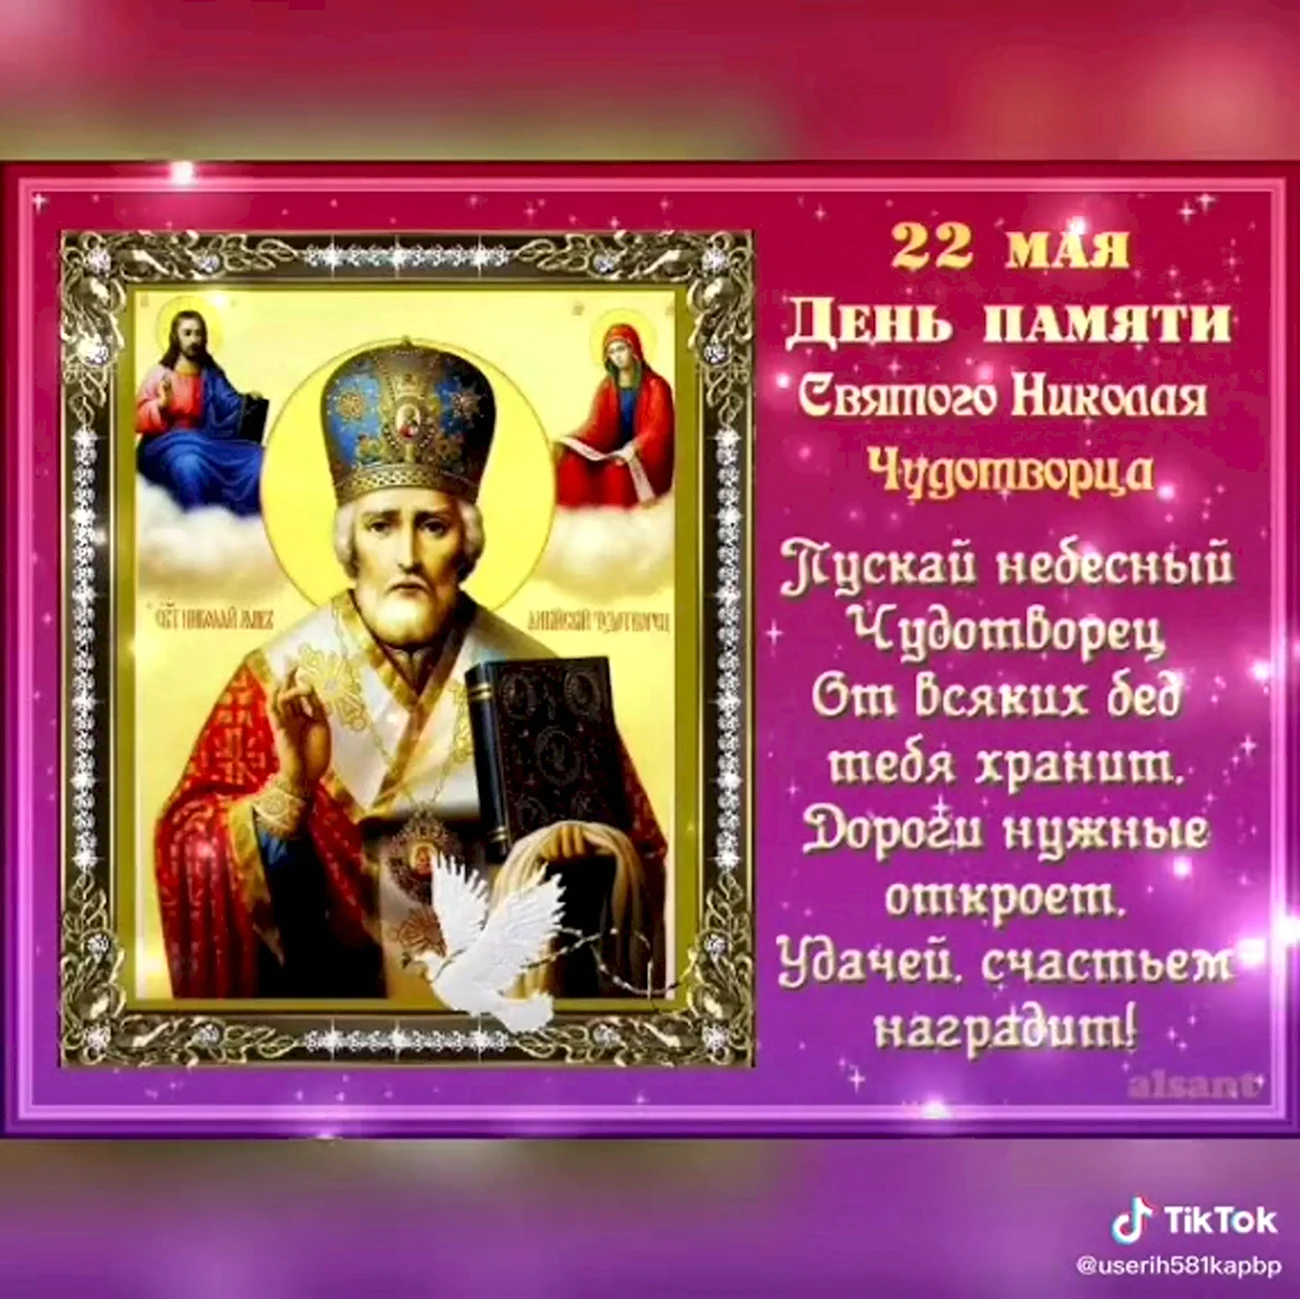 Святитель Николай Чудотворец 22 мая. Поздравление